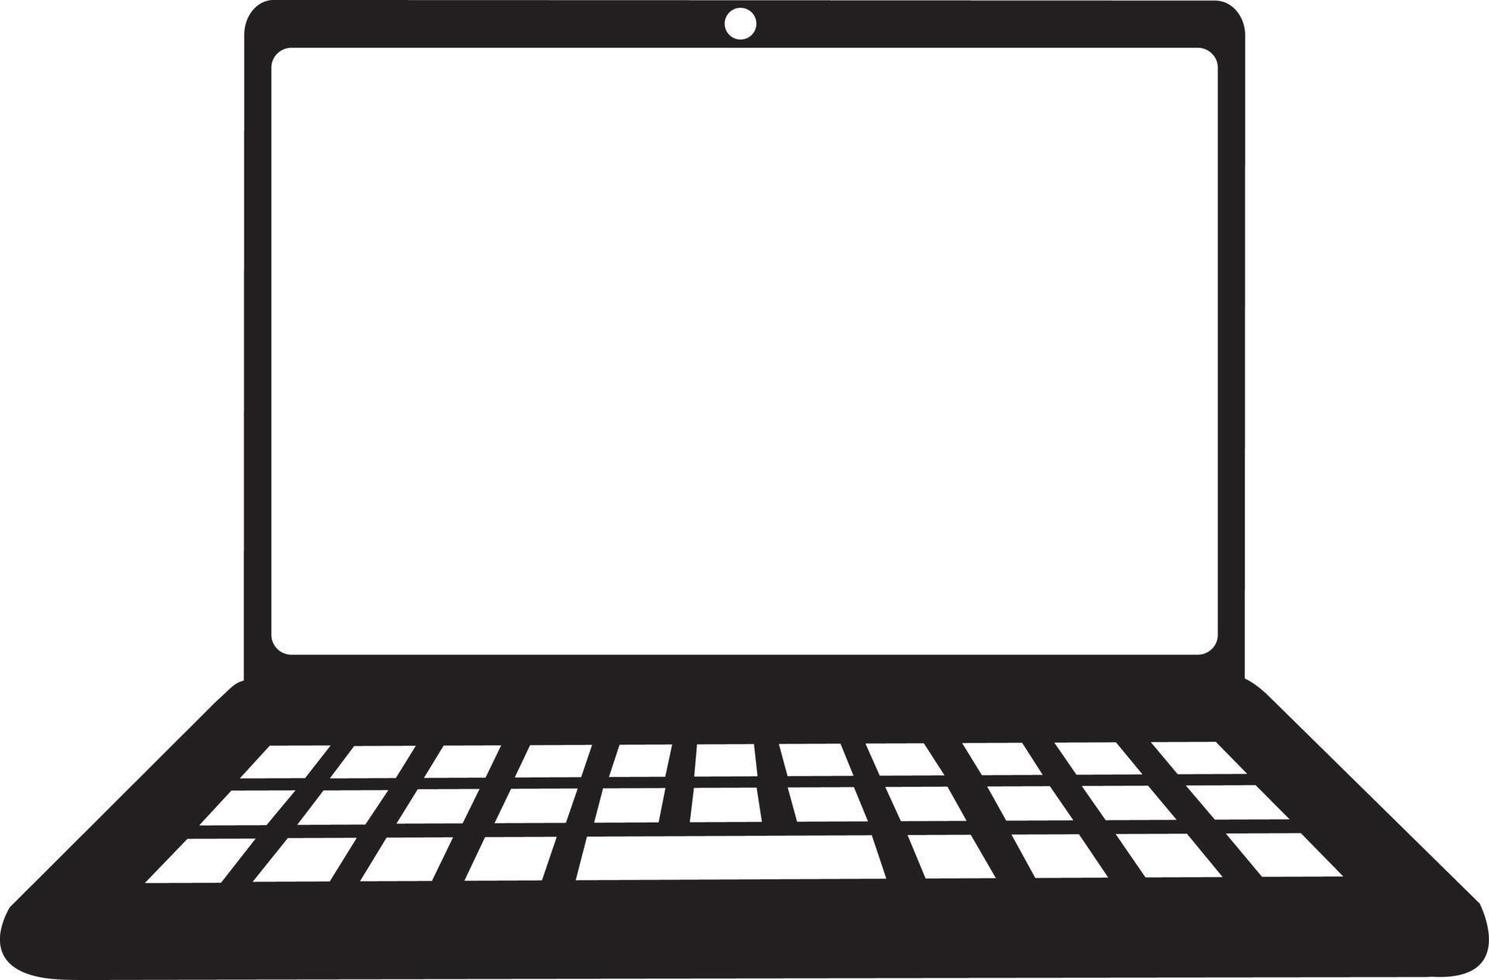 icono de portátil. portátil en estilo plano aislado en vector de fondo blanco